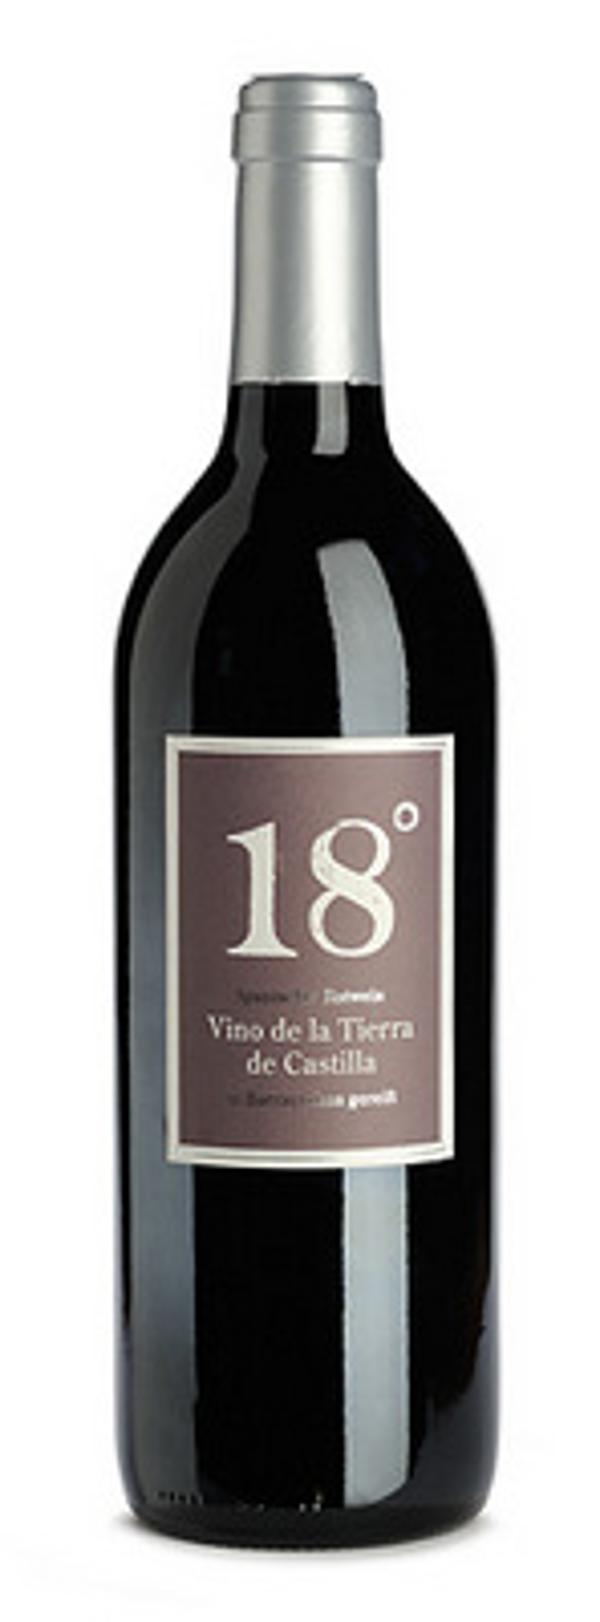 Produktfoto zu VPE Wein 18° Vdt Castilla rot 6x0,75 l Bodegas Dionisos